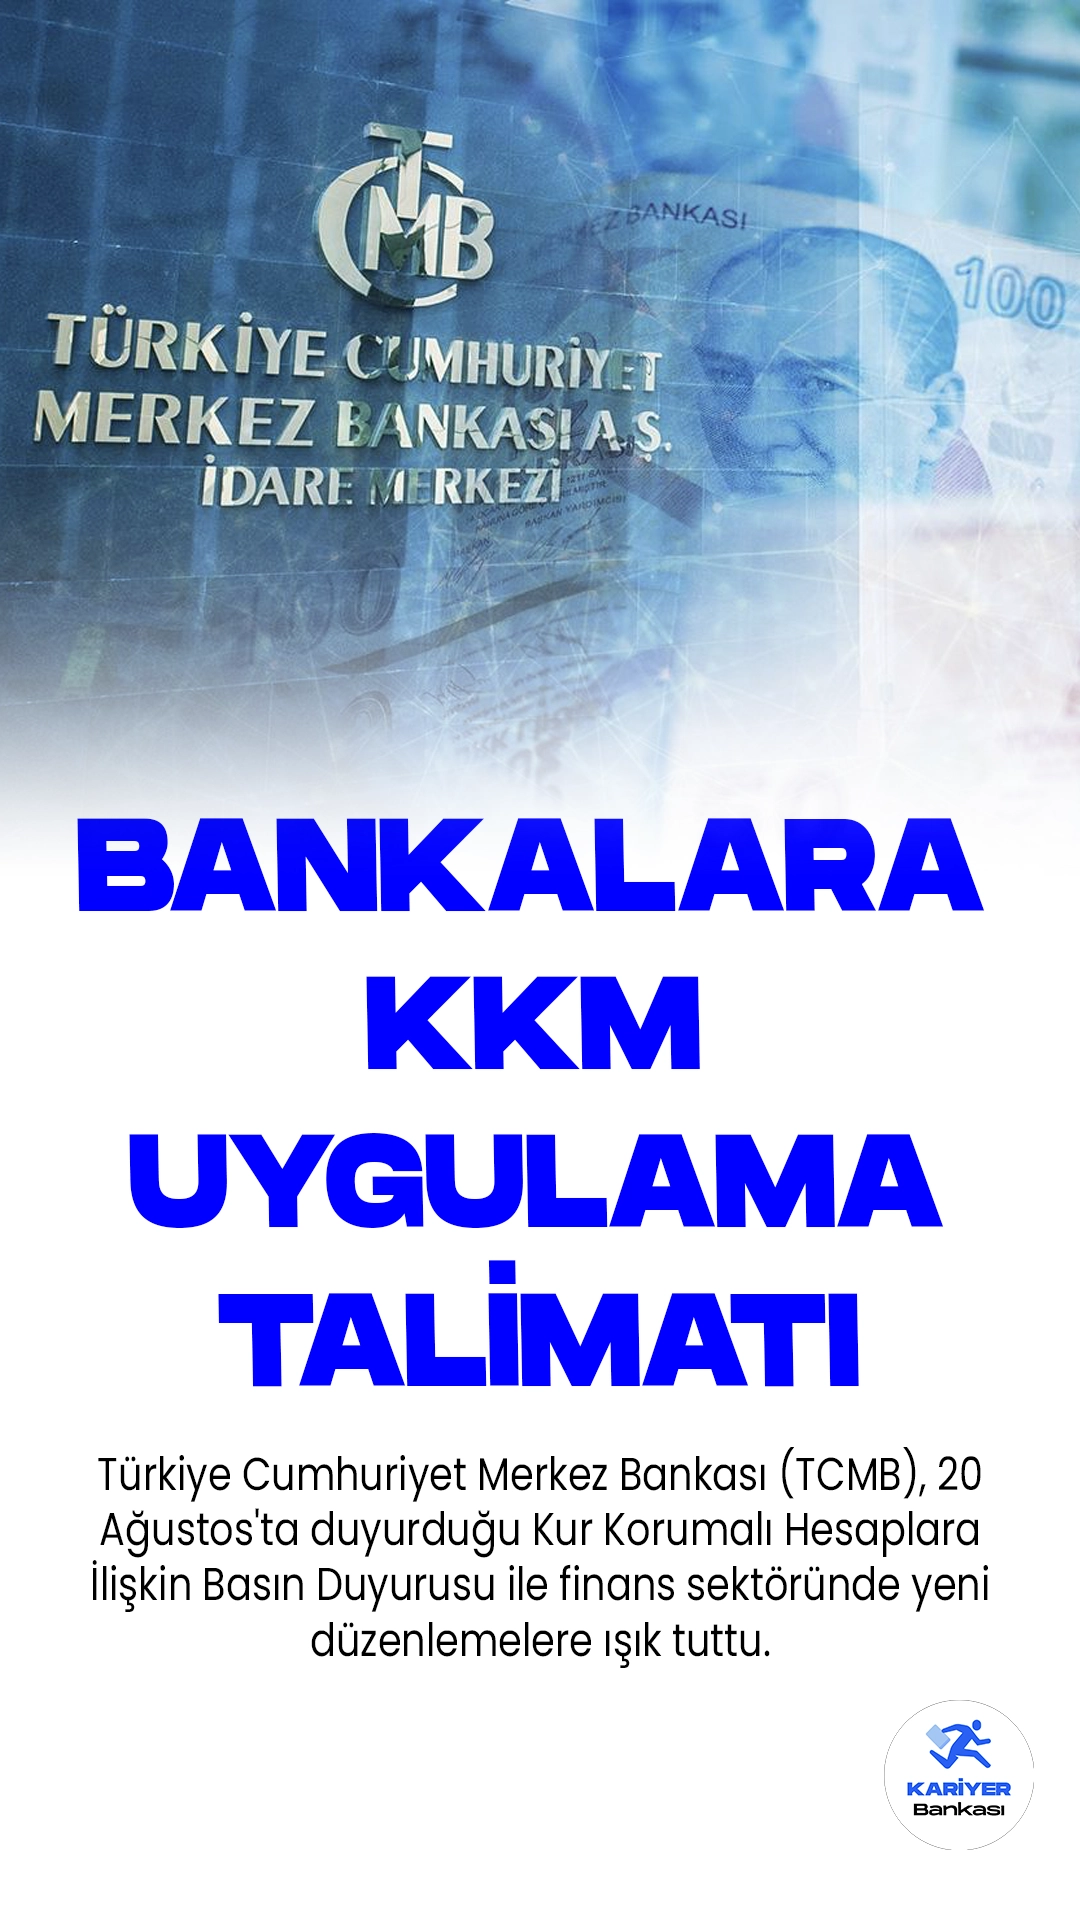 Merkez Bankası'ndan Bankalara KKM Uyguma Talimatı.Türkiye Cumhuriyet Merkez Bankası (TCMB), 20 Ağustos'ta duyurduğu Kur Korumalı Hesaplara İlişkin Basın Duyurusu ile finans sektöründe yeni düzenlemelere ışık tuttu.